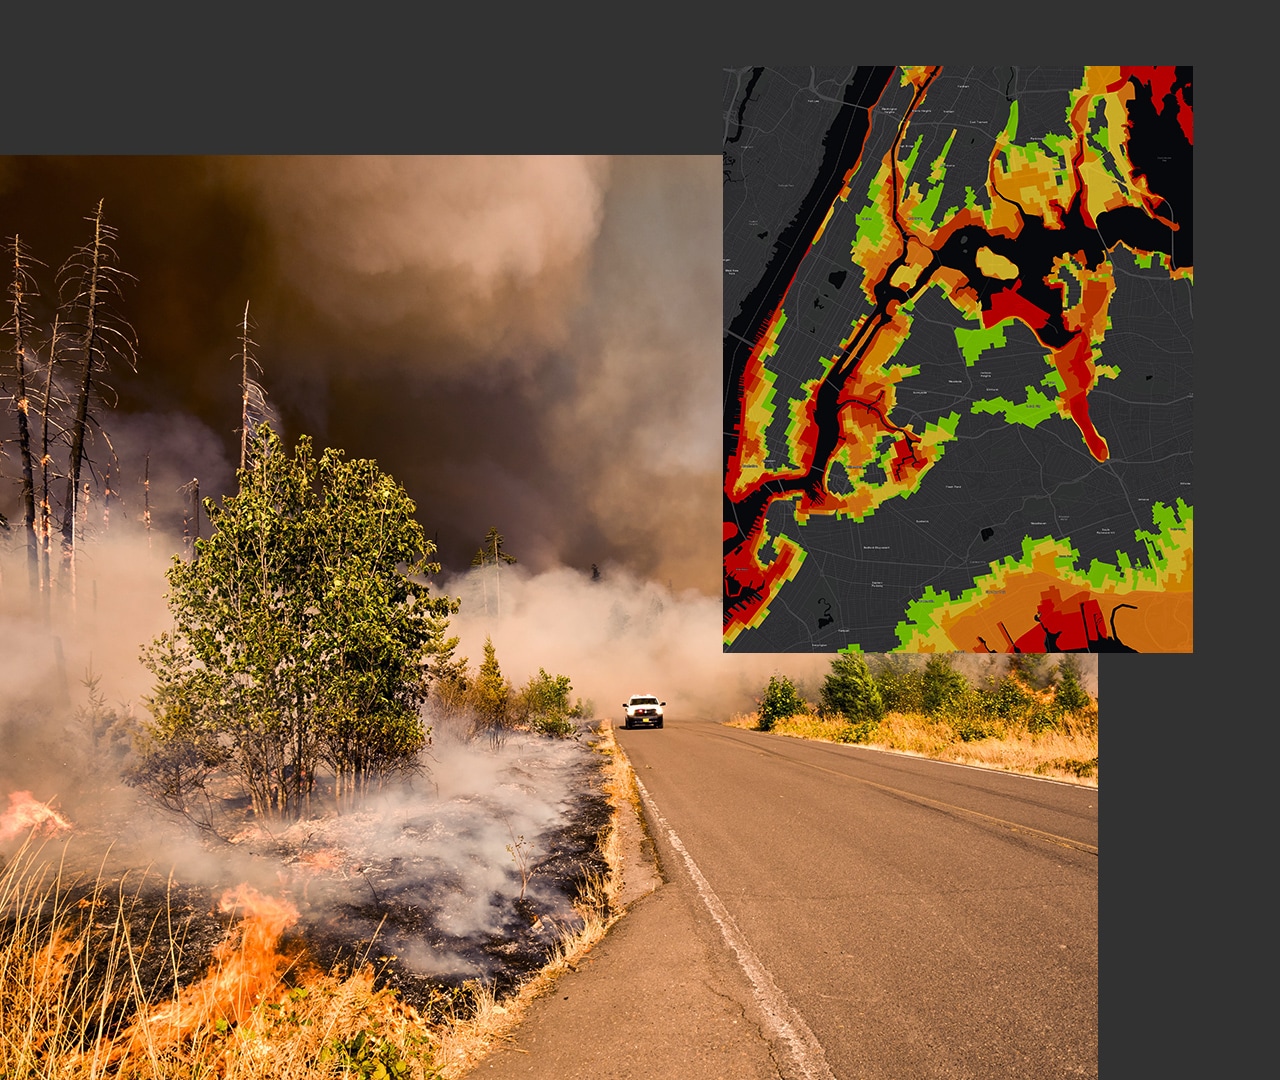 Bild von einem Waldbrand mit einem weißen Notfallfahrzeug auf der Durchfahrtsstraße, daneben die Abbildung einer grauen digitalen Karte